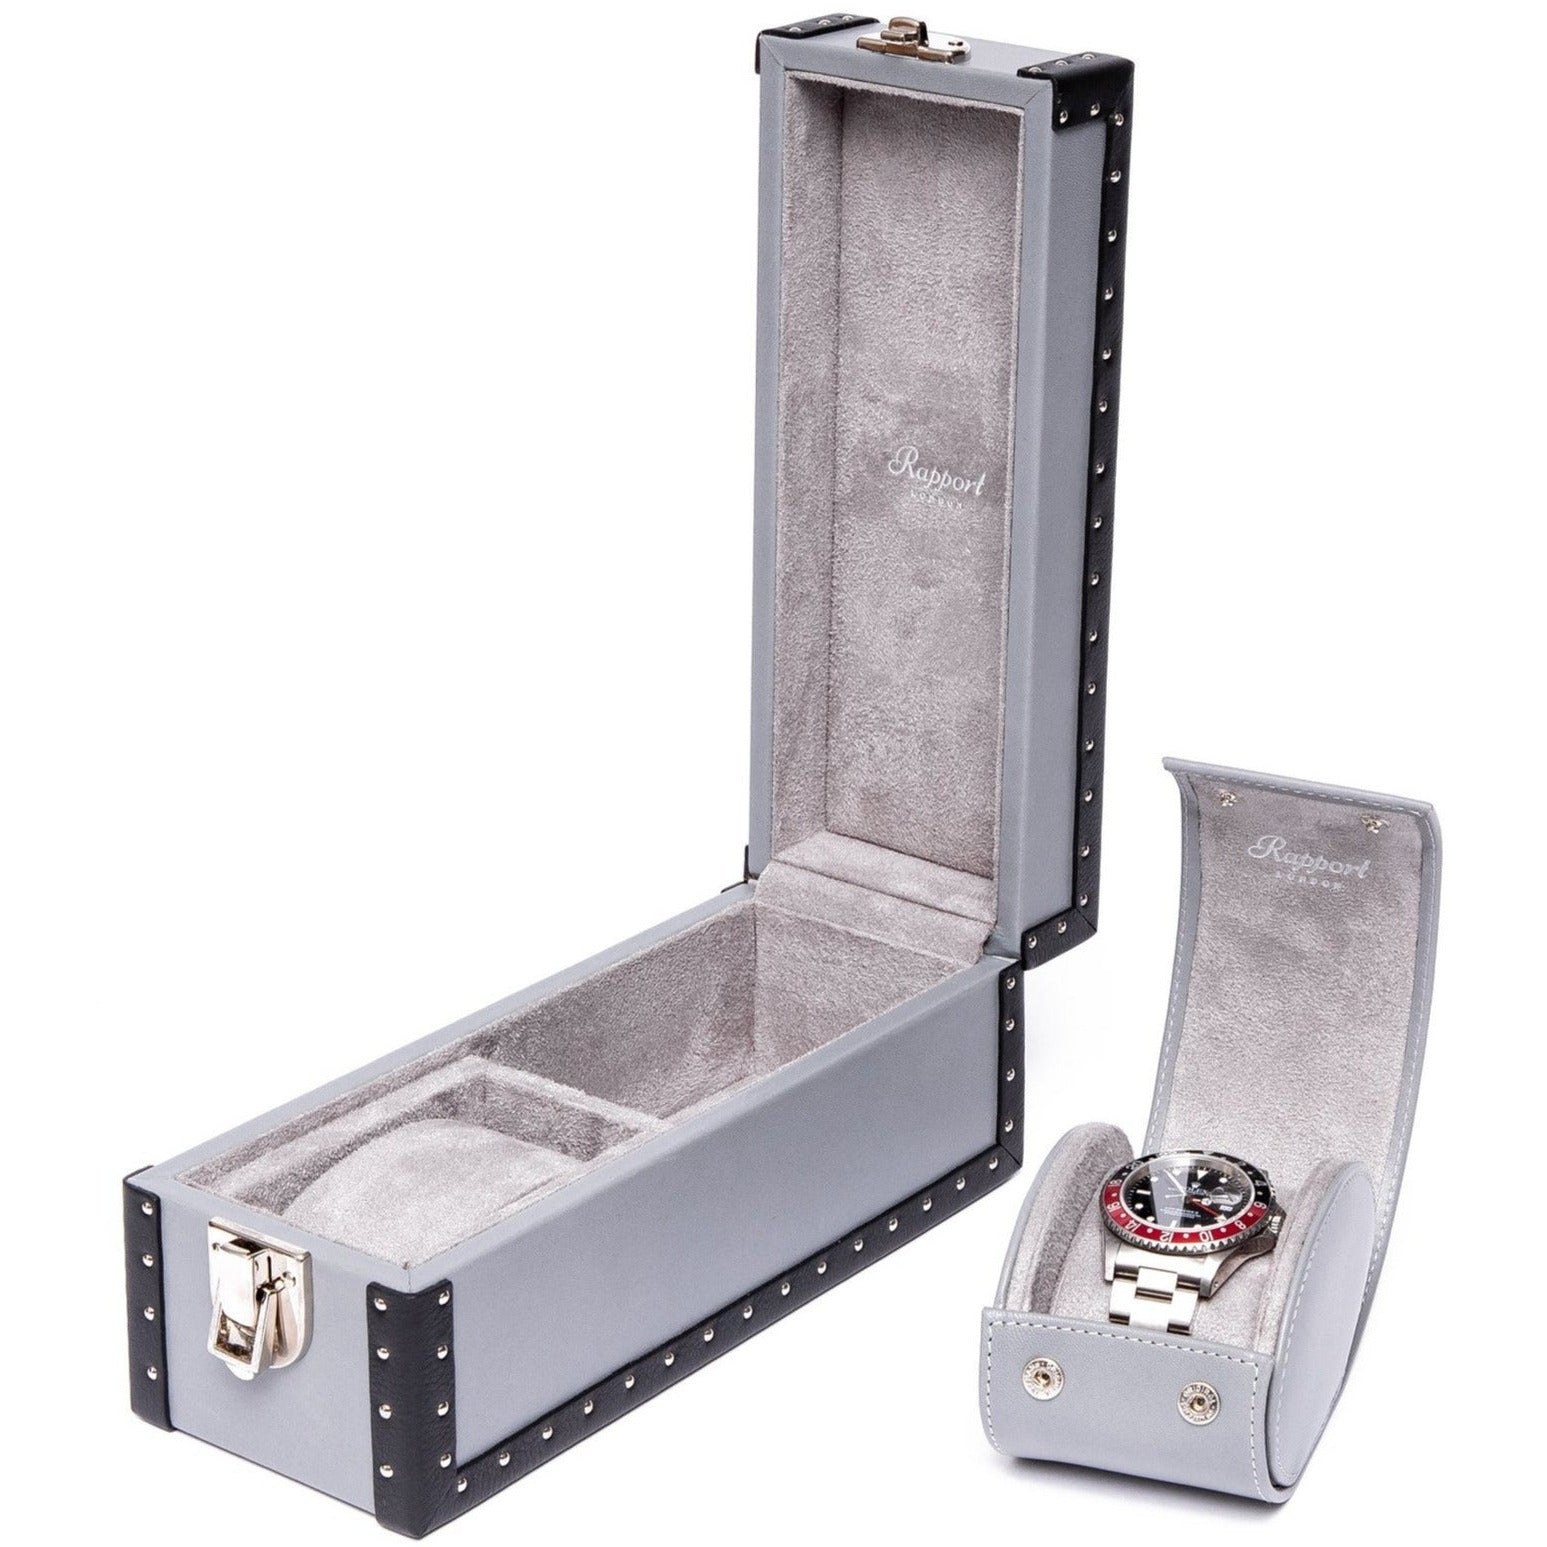 Rapport Kensington Watch Box Double in Grey Leather L335 - Watchwindersplus